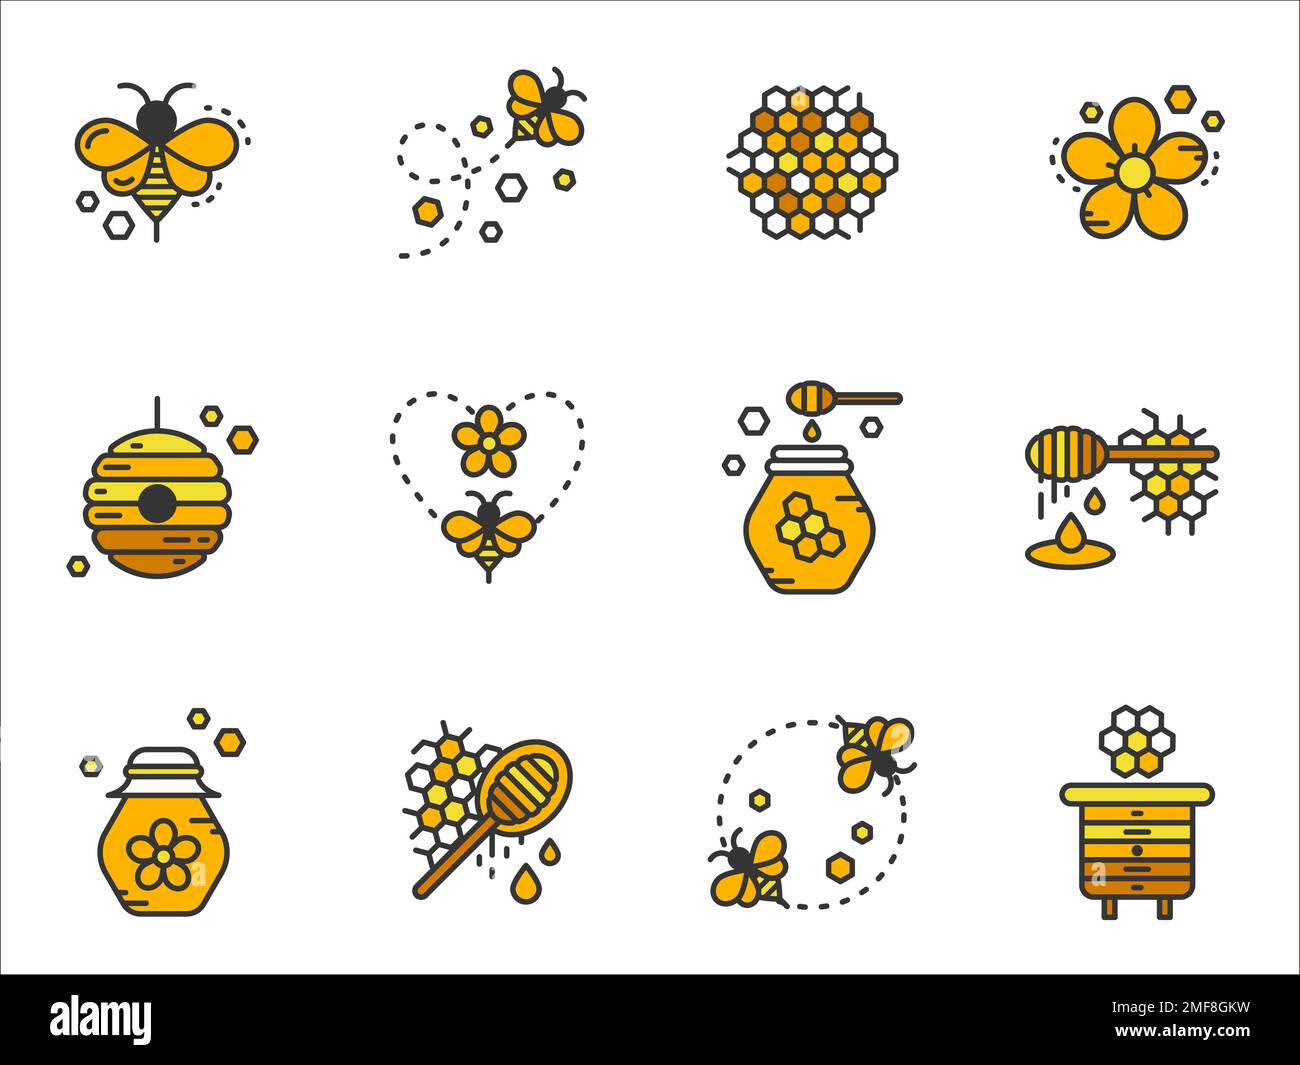 Honig-Symbole gesetzt. Bienen, Waben, Gläser mit Honig, Bienenstöcke, Honigdipper und Blumen für Website, Etikett, Banner, Muster und mehr. Stock Vektor